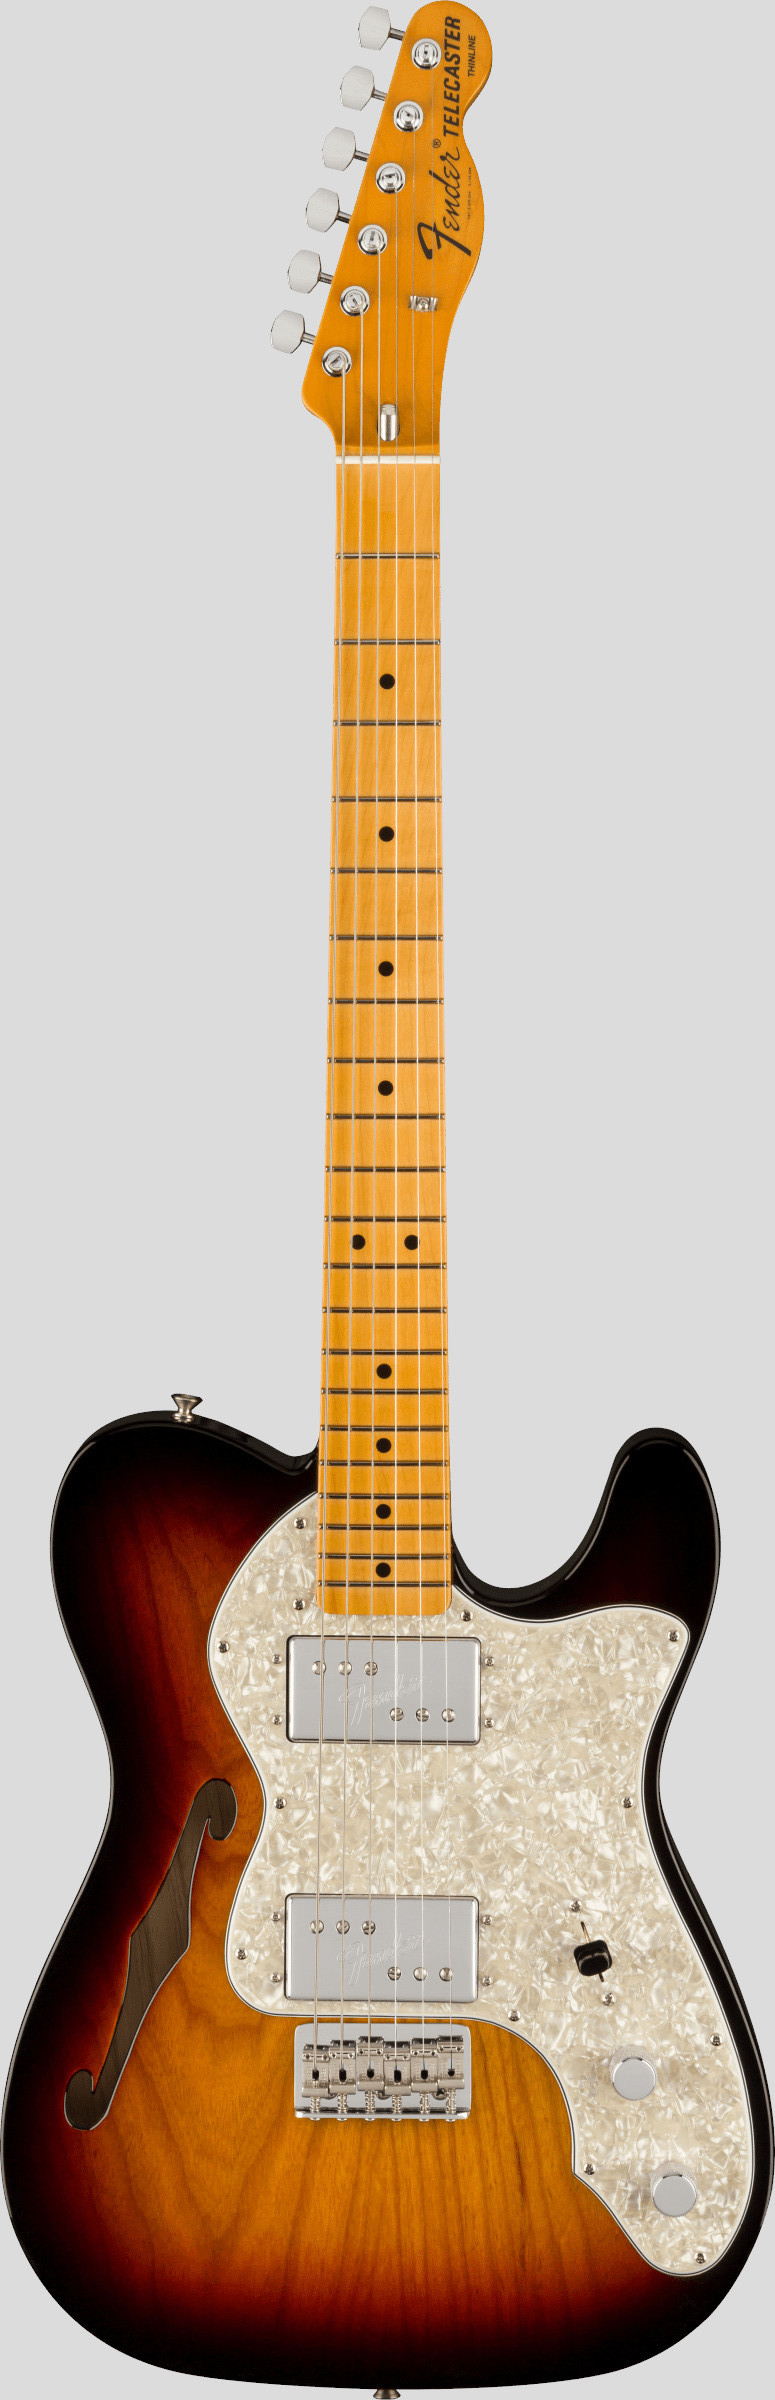 Fender American Vintage II 1972 Telecaster Thinline 3-Color Sunburst 1